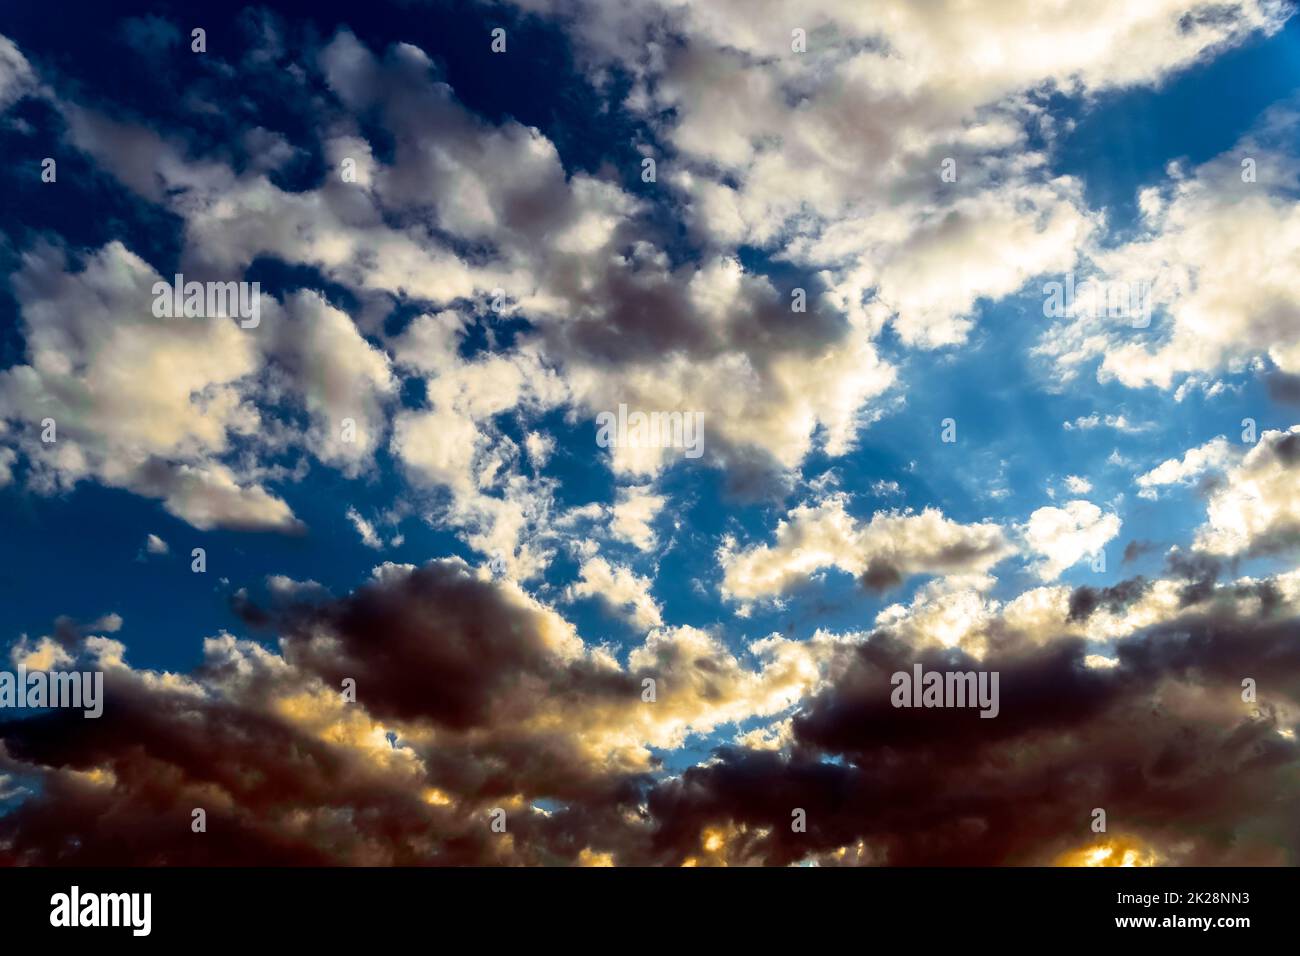 Panoramablick auf den blauen Himmel mit Wolken in Bewegung. Blick auf den blauen Himmel mit Wolken in Bewegung. Schönes Wetter mit klarem Himmel. Himmlisches Licht. Dramatischer Himmel mit Wolken Stockfoto